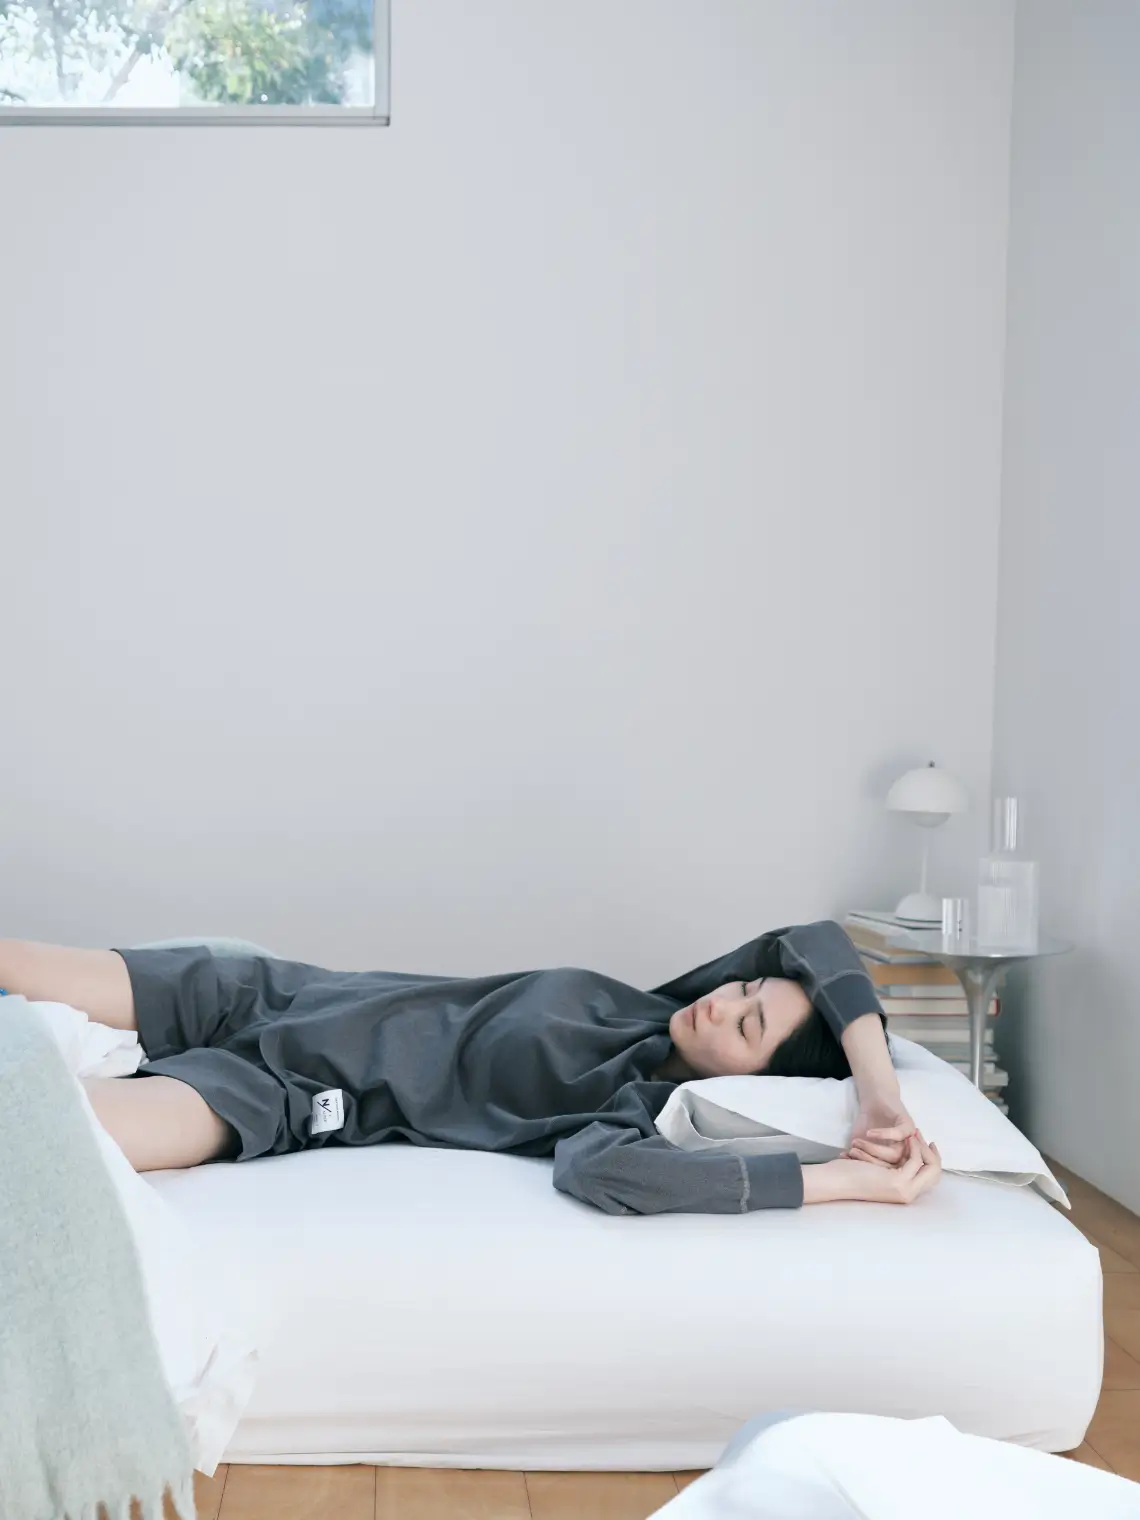 SAIRINシリーズのパジャマを着て寝る人